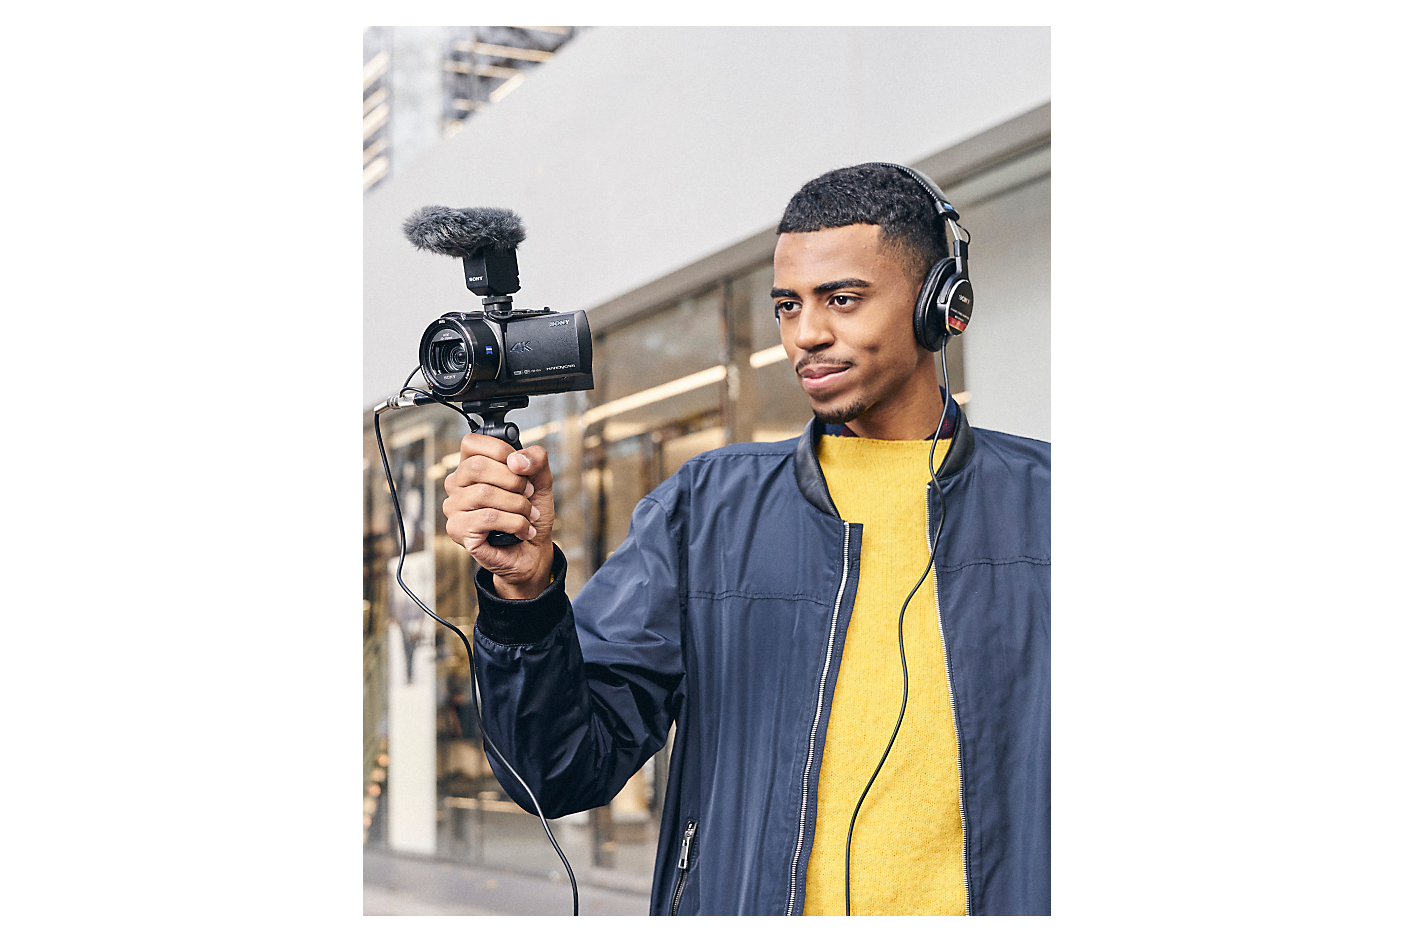 Muž s nasazenými sluchátky drží fotoaparát Sony s připevněným gripem pro snímání a mikrofonem.